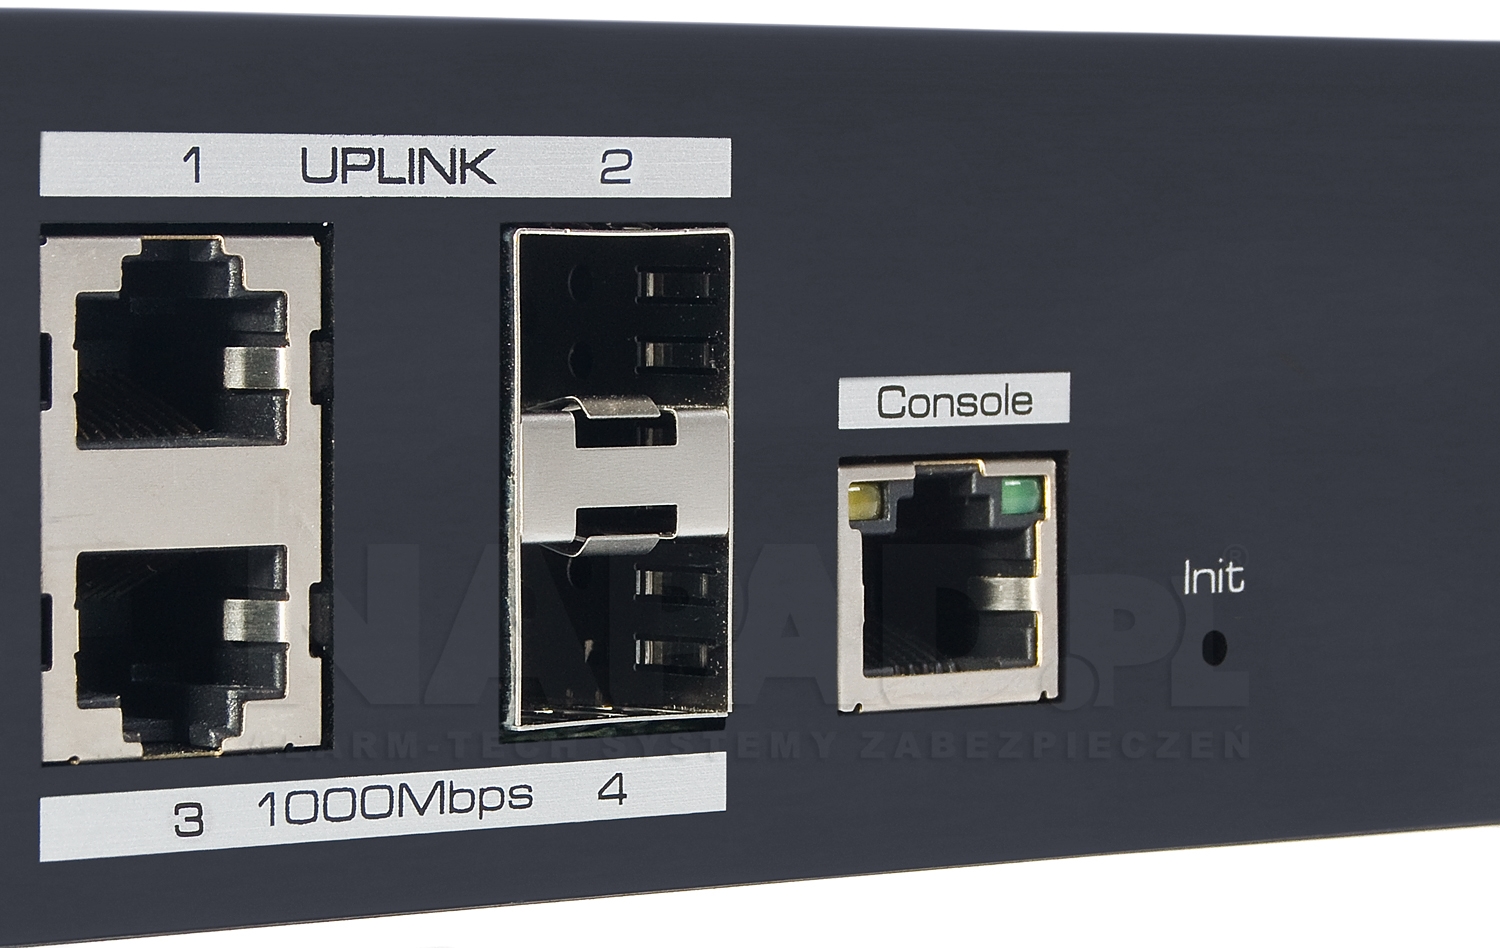 UTP7224E-L2 - Porty Uplink w switchu PoE IPOX.